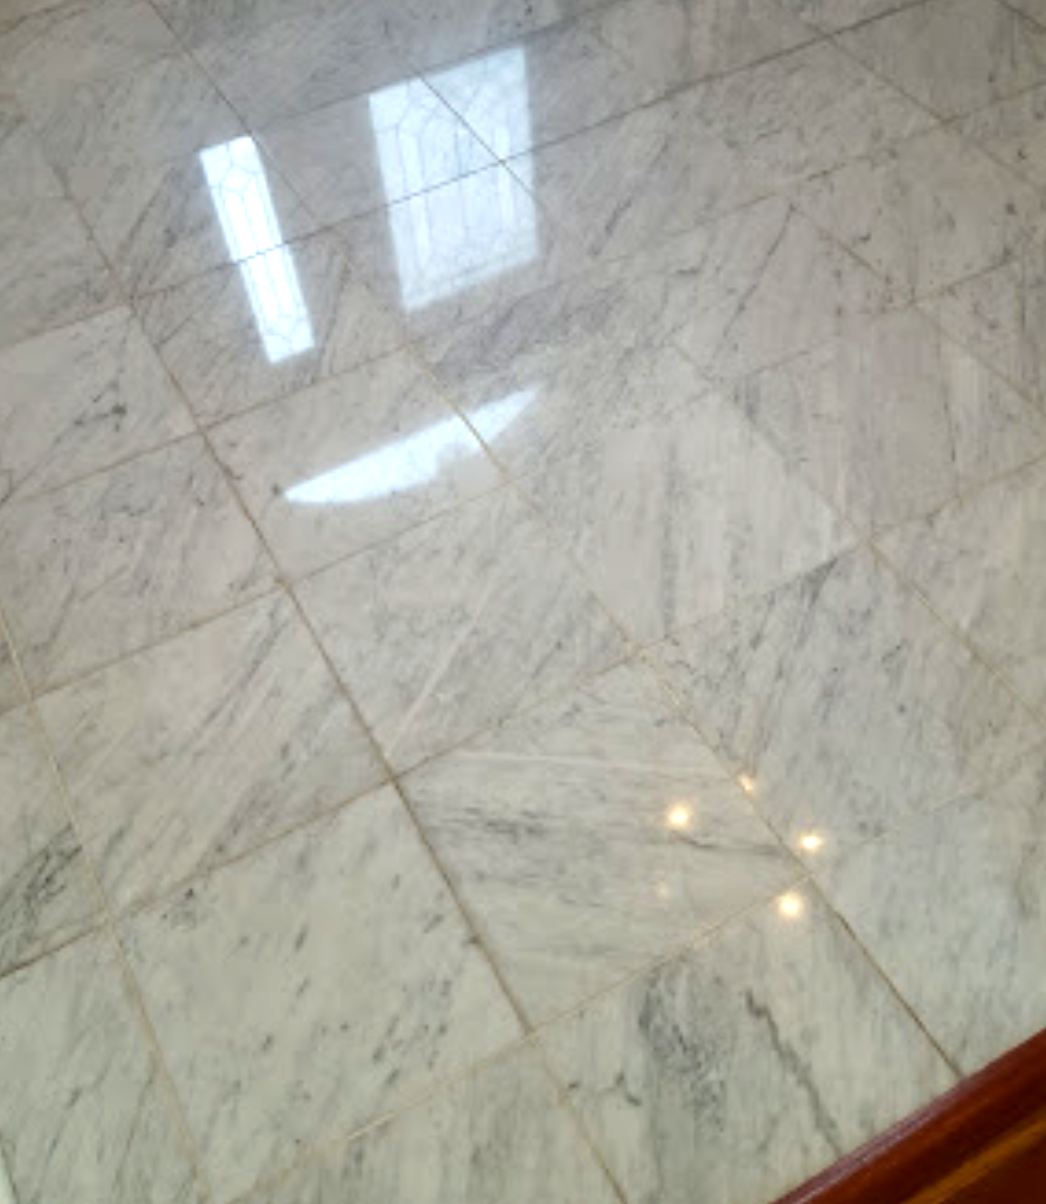 Marble Floors